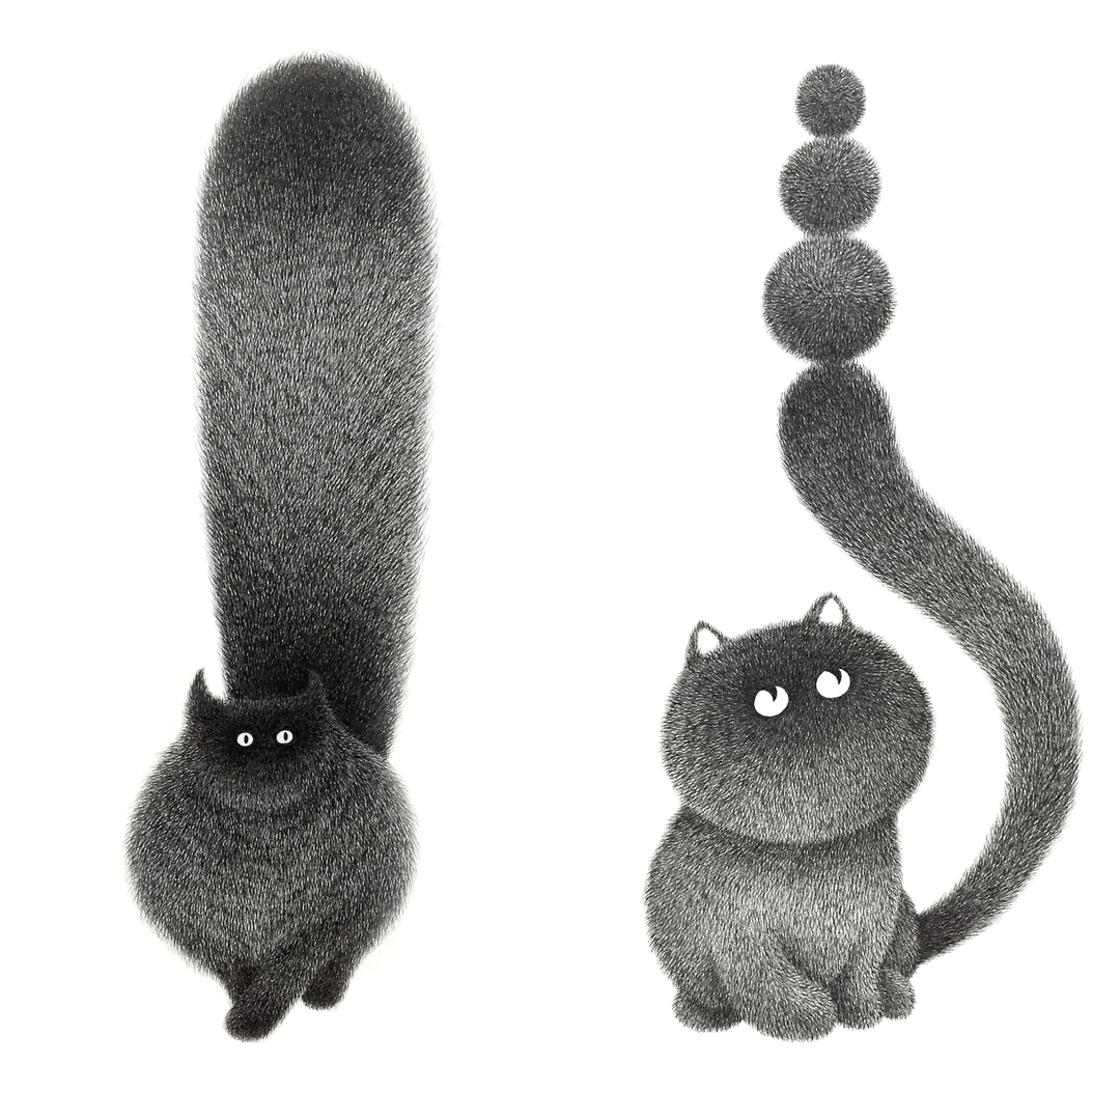 毛茸茸的猫:插画师Kamwei Fong插画作品